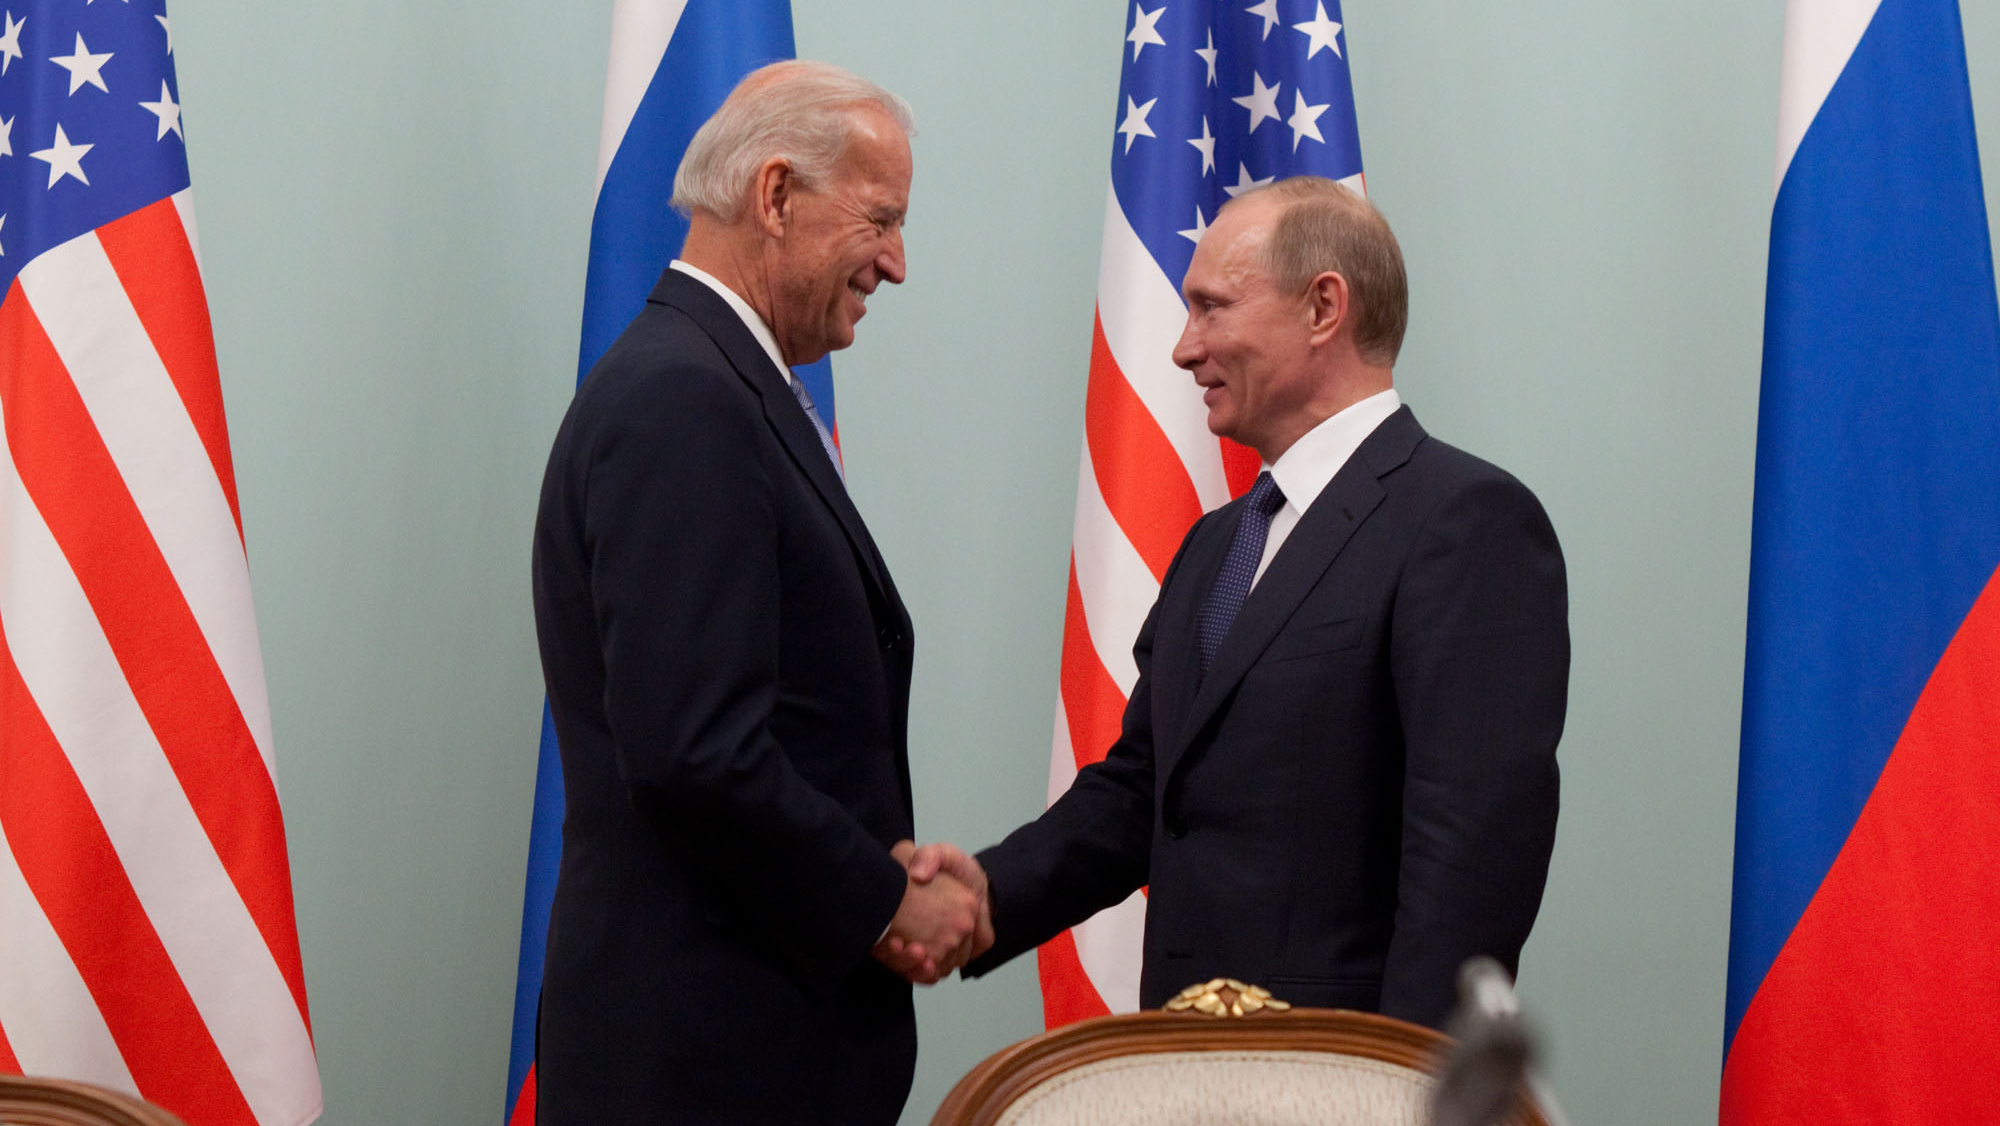 Джо Байден и Владимир Путин в 2011 году